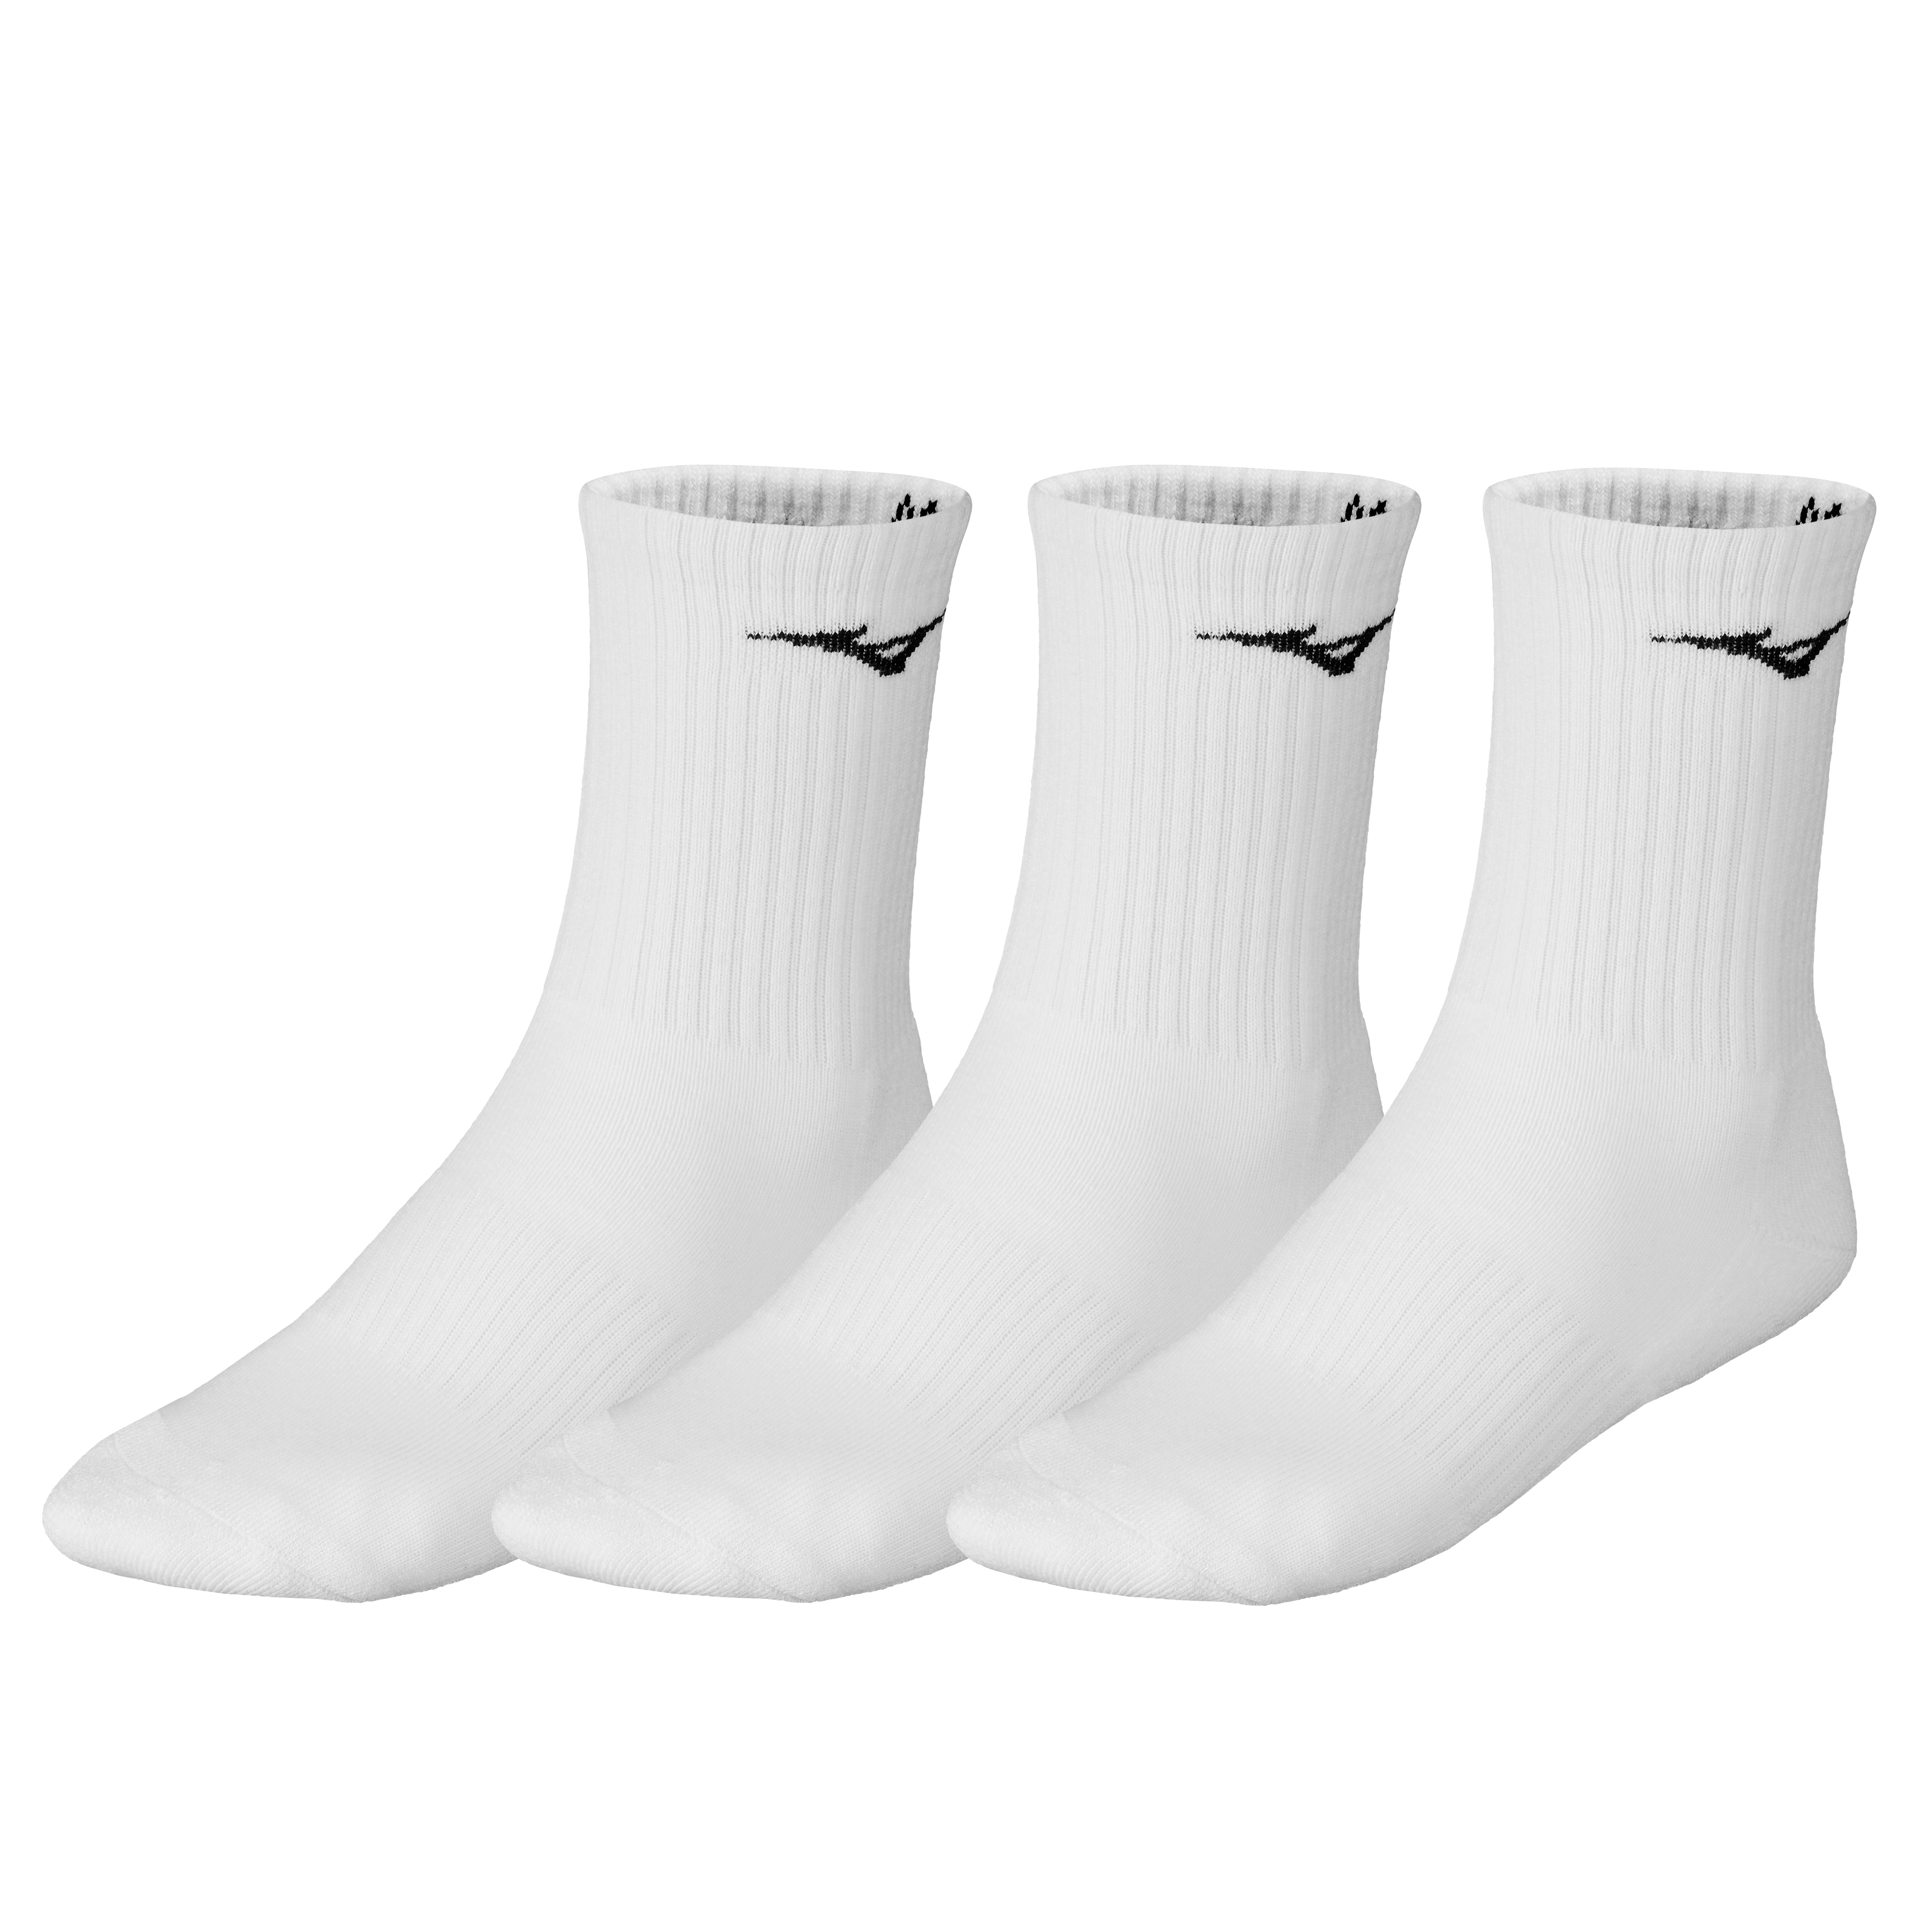 Mizuno Training Socks (3-Pack, White)